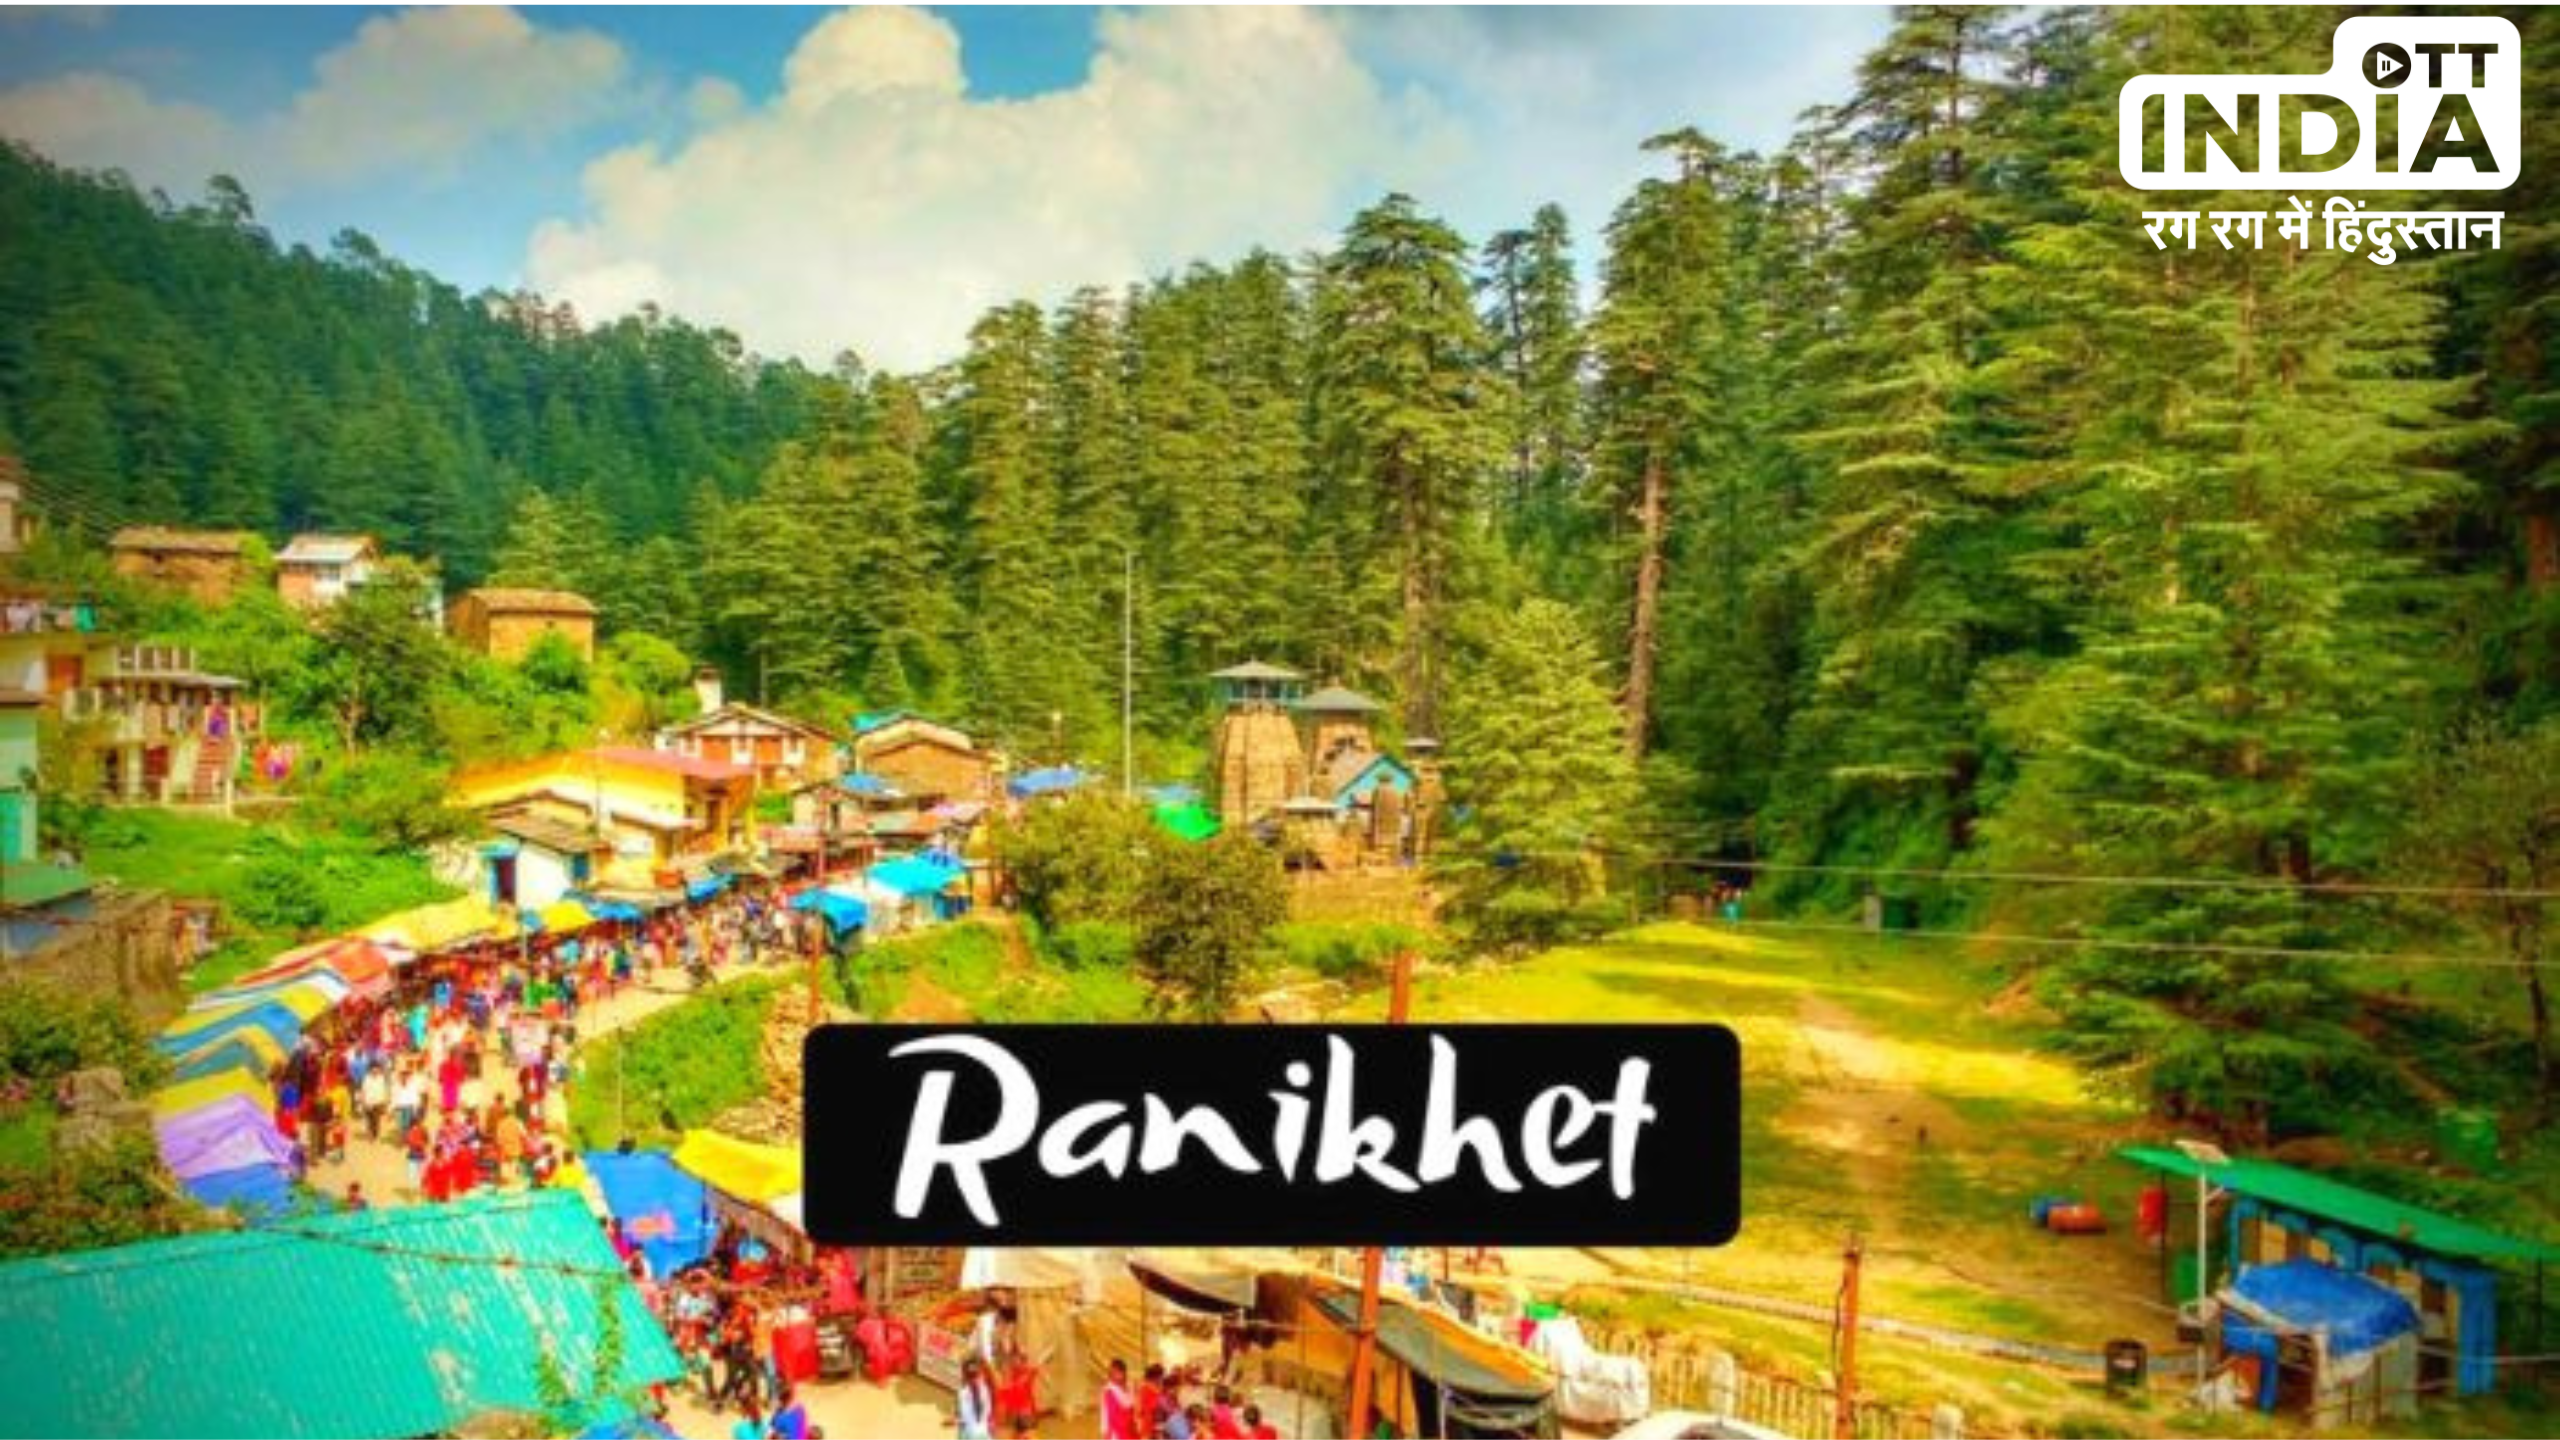 Famous Places in Ranikhet : दिल्ली से ज़्यादा दूर नहीं है रानीखेत, इस वीकेंड घूम आइए एक बार